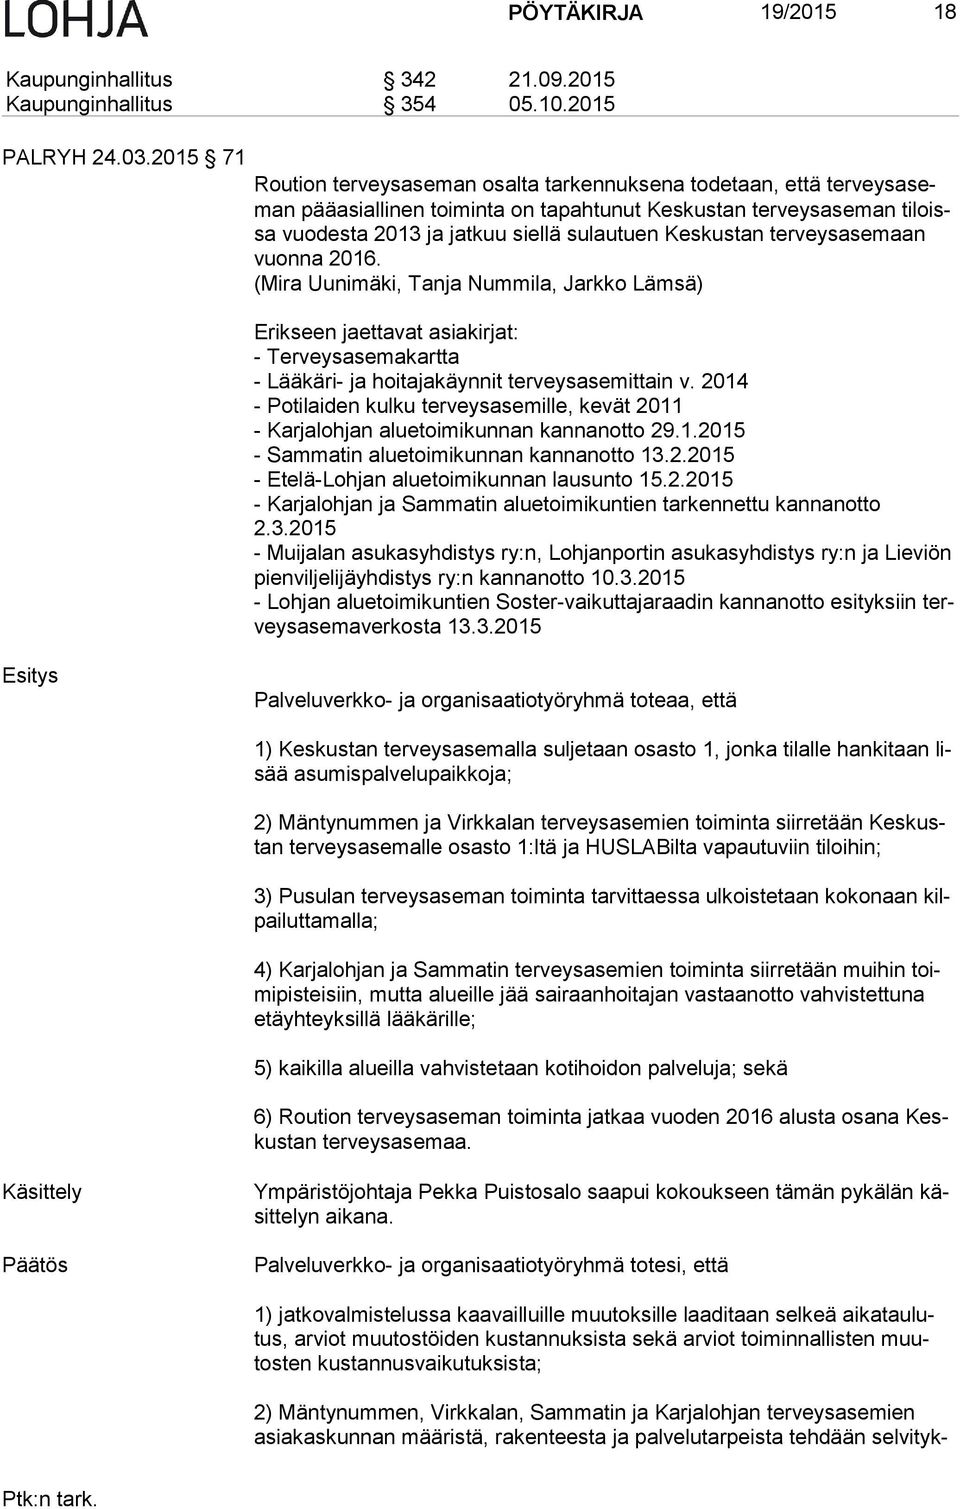 Keskustan ter veys ase maan vuon na 2016. (Mira Uunimäki, Tanja Nummila, Jarkko Lämsä) Erikseen jaettavat asiakirjat: - Terveysasemakartta - Lääkäri- ja hoitajakäynnit terveysasemittain v.